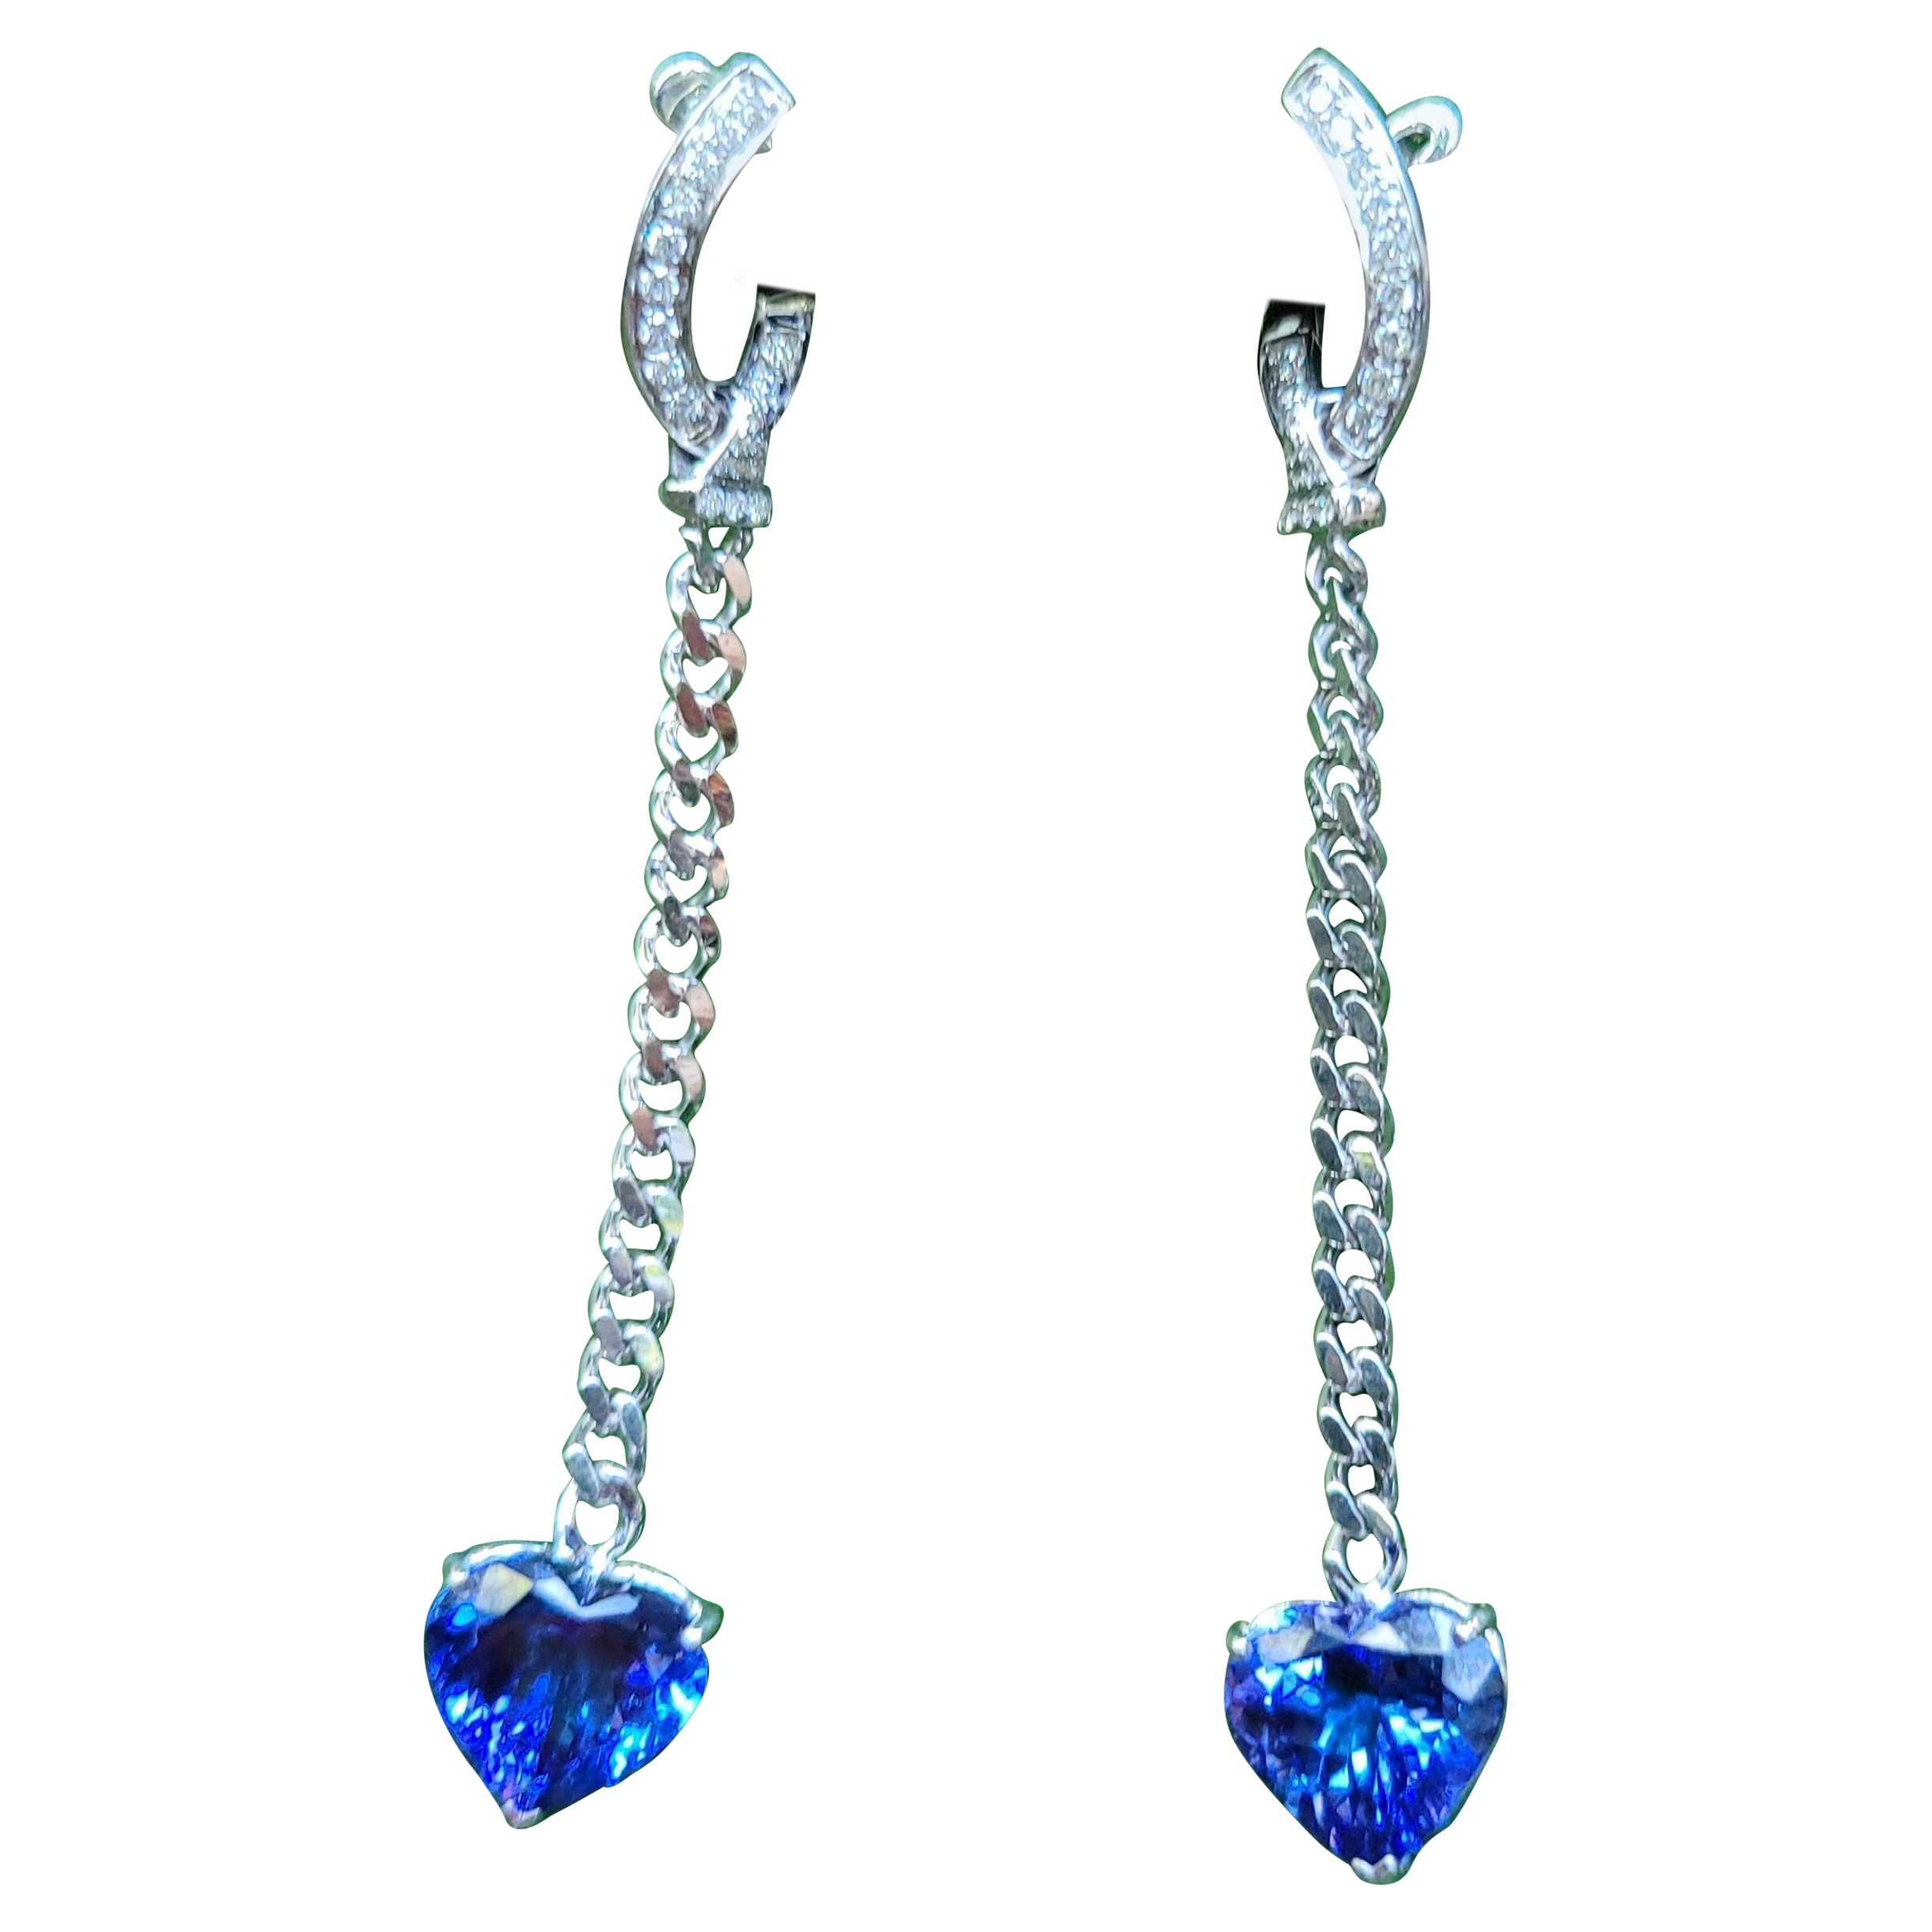 Heart Shape Tanzanite Earrings with Diamonds in 18K White Gold